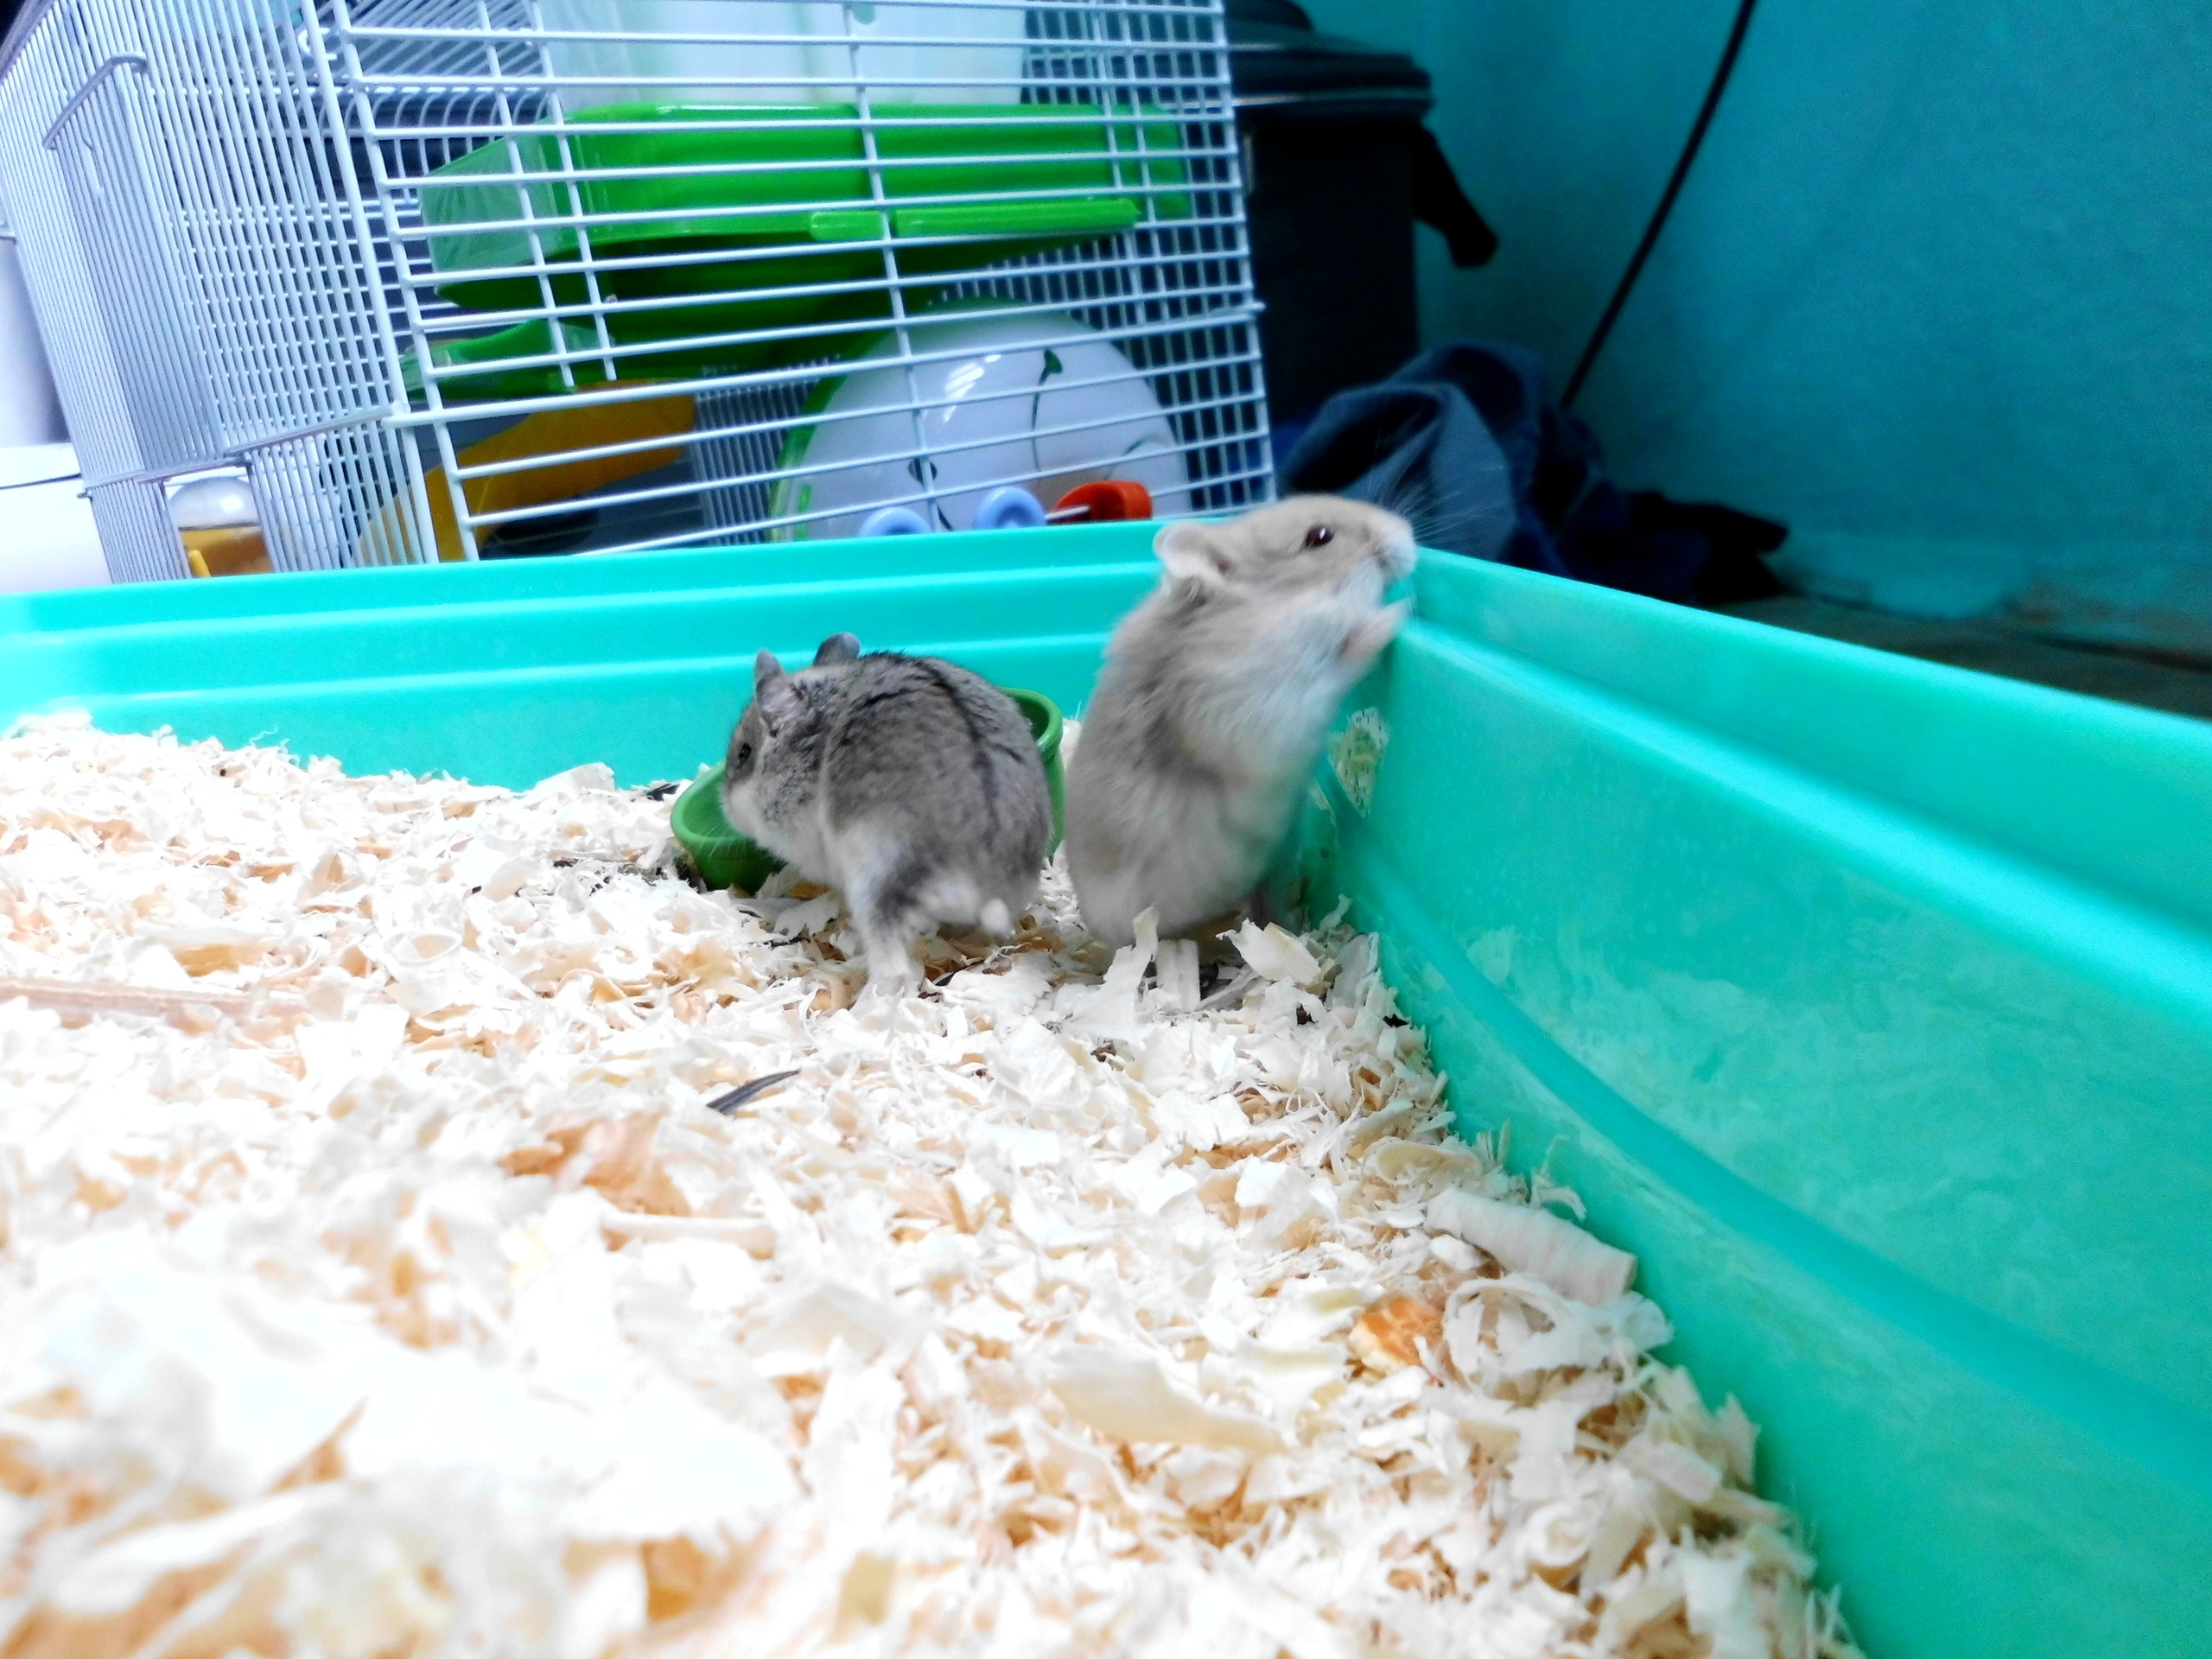  iki tane gonzales türü yavru hamsterim var. birisi sürekli kafes tellerini kemiriyor ve çarkta koşmuyorlar